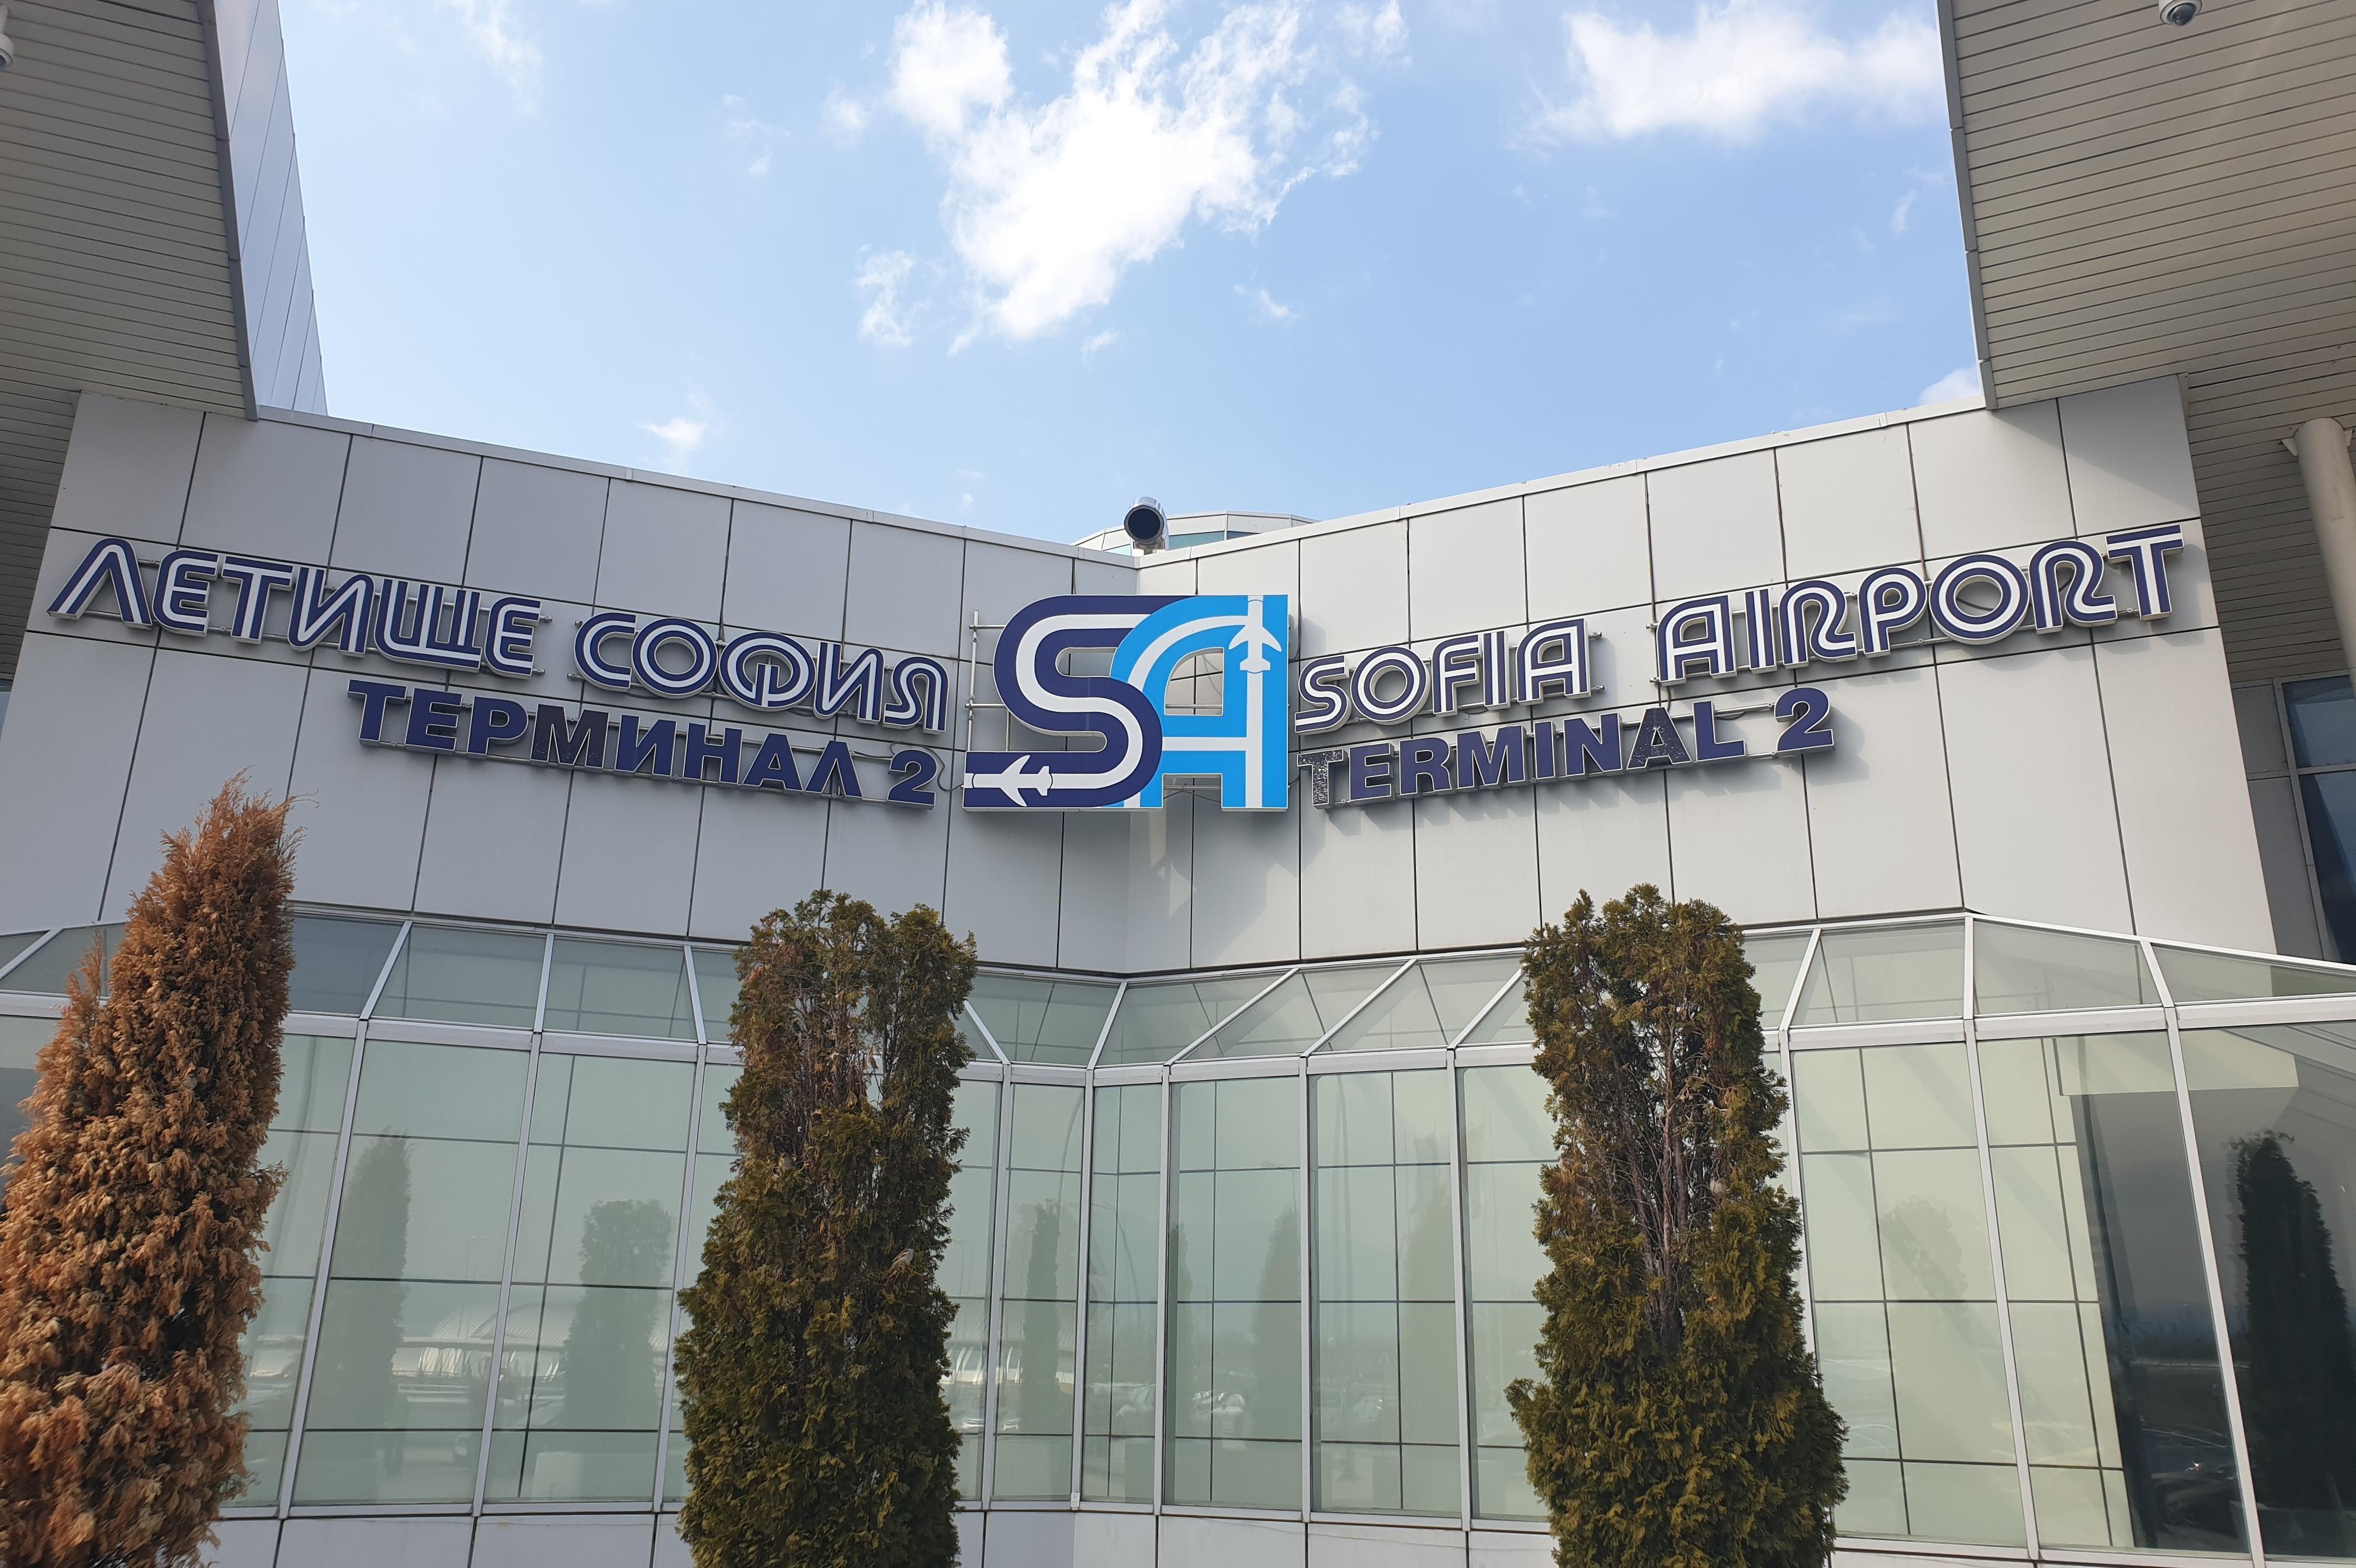 Българската стопанска камара и Летище София ще си сътрудничат в бизнес